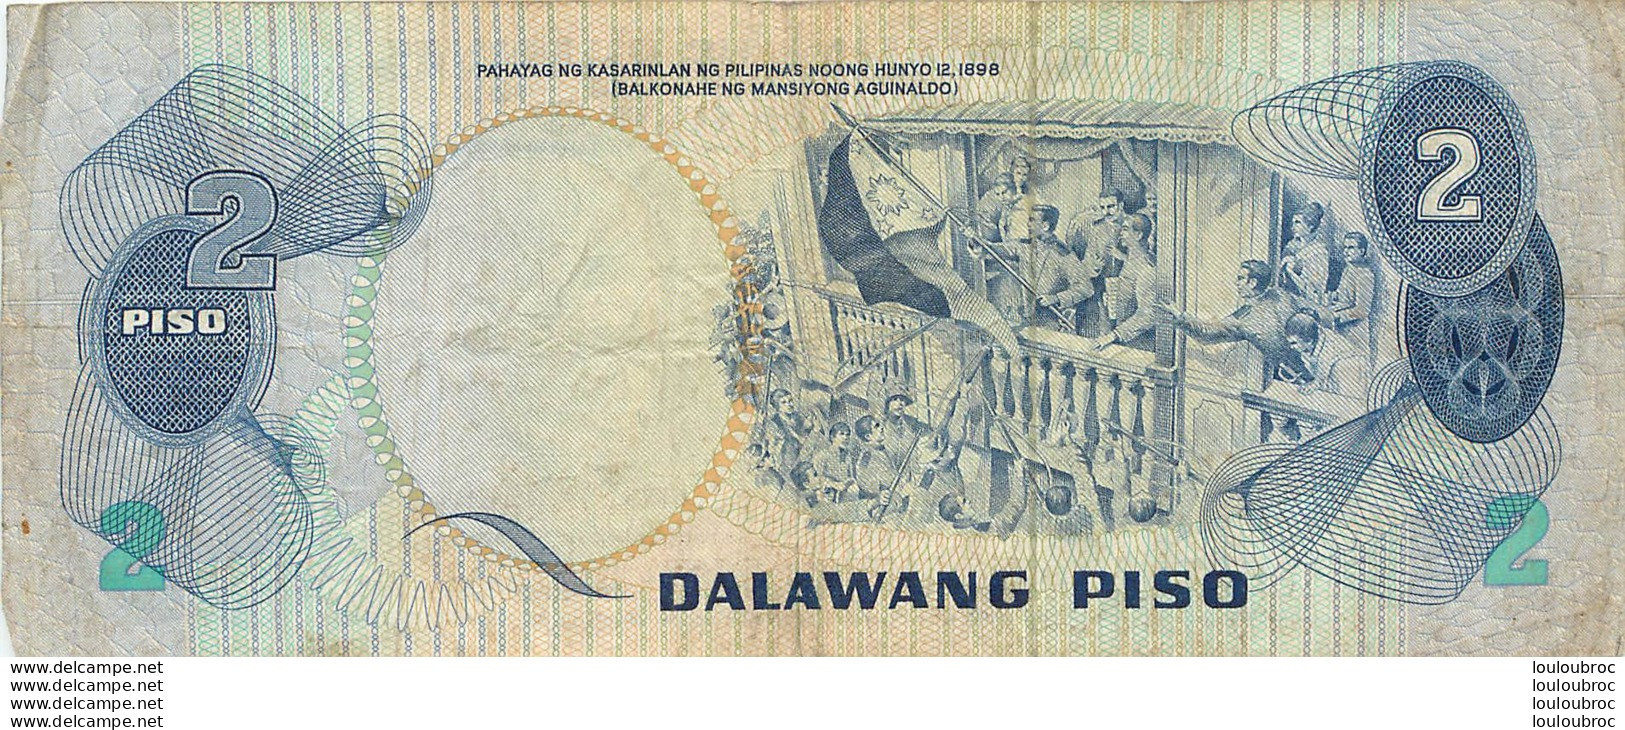 BILLET   REPUBLIKA NG  PILIPINAS 2 DALAWANG PISO - Filipinas